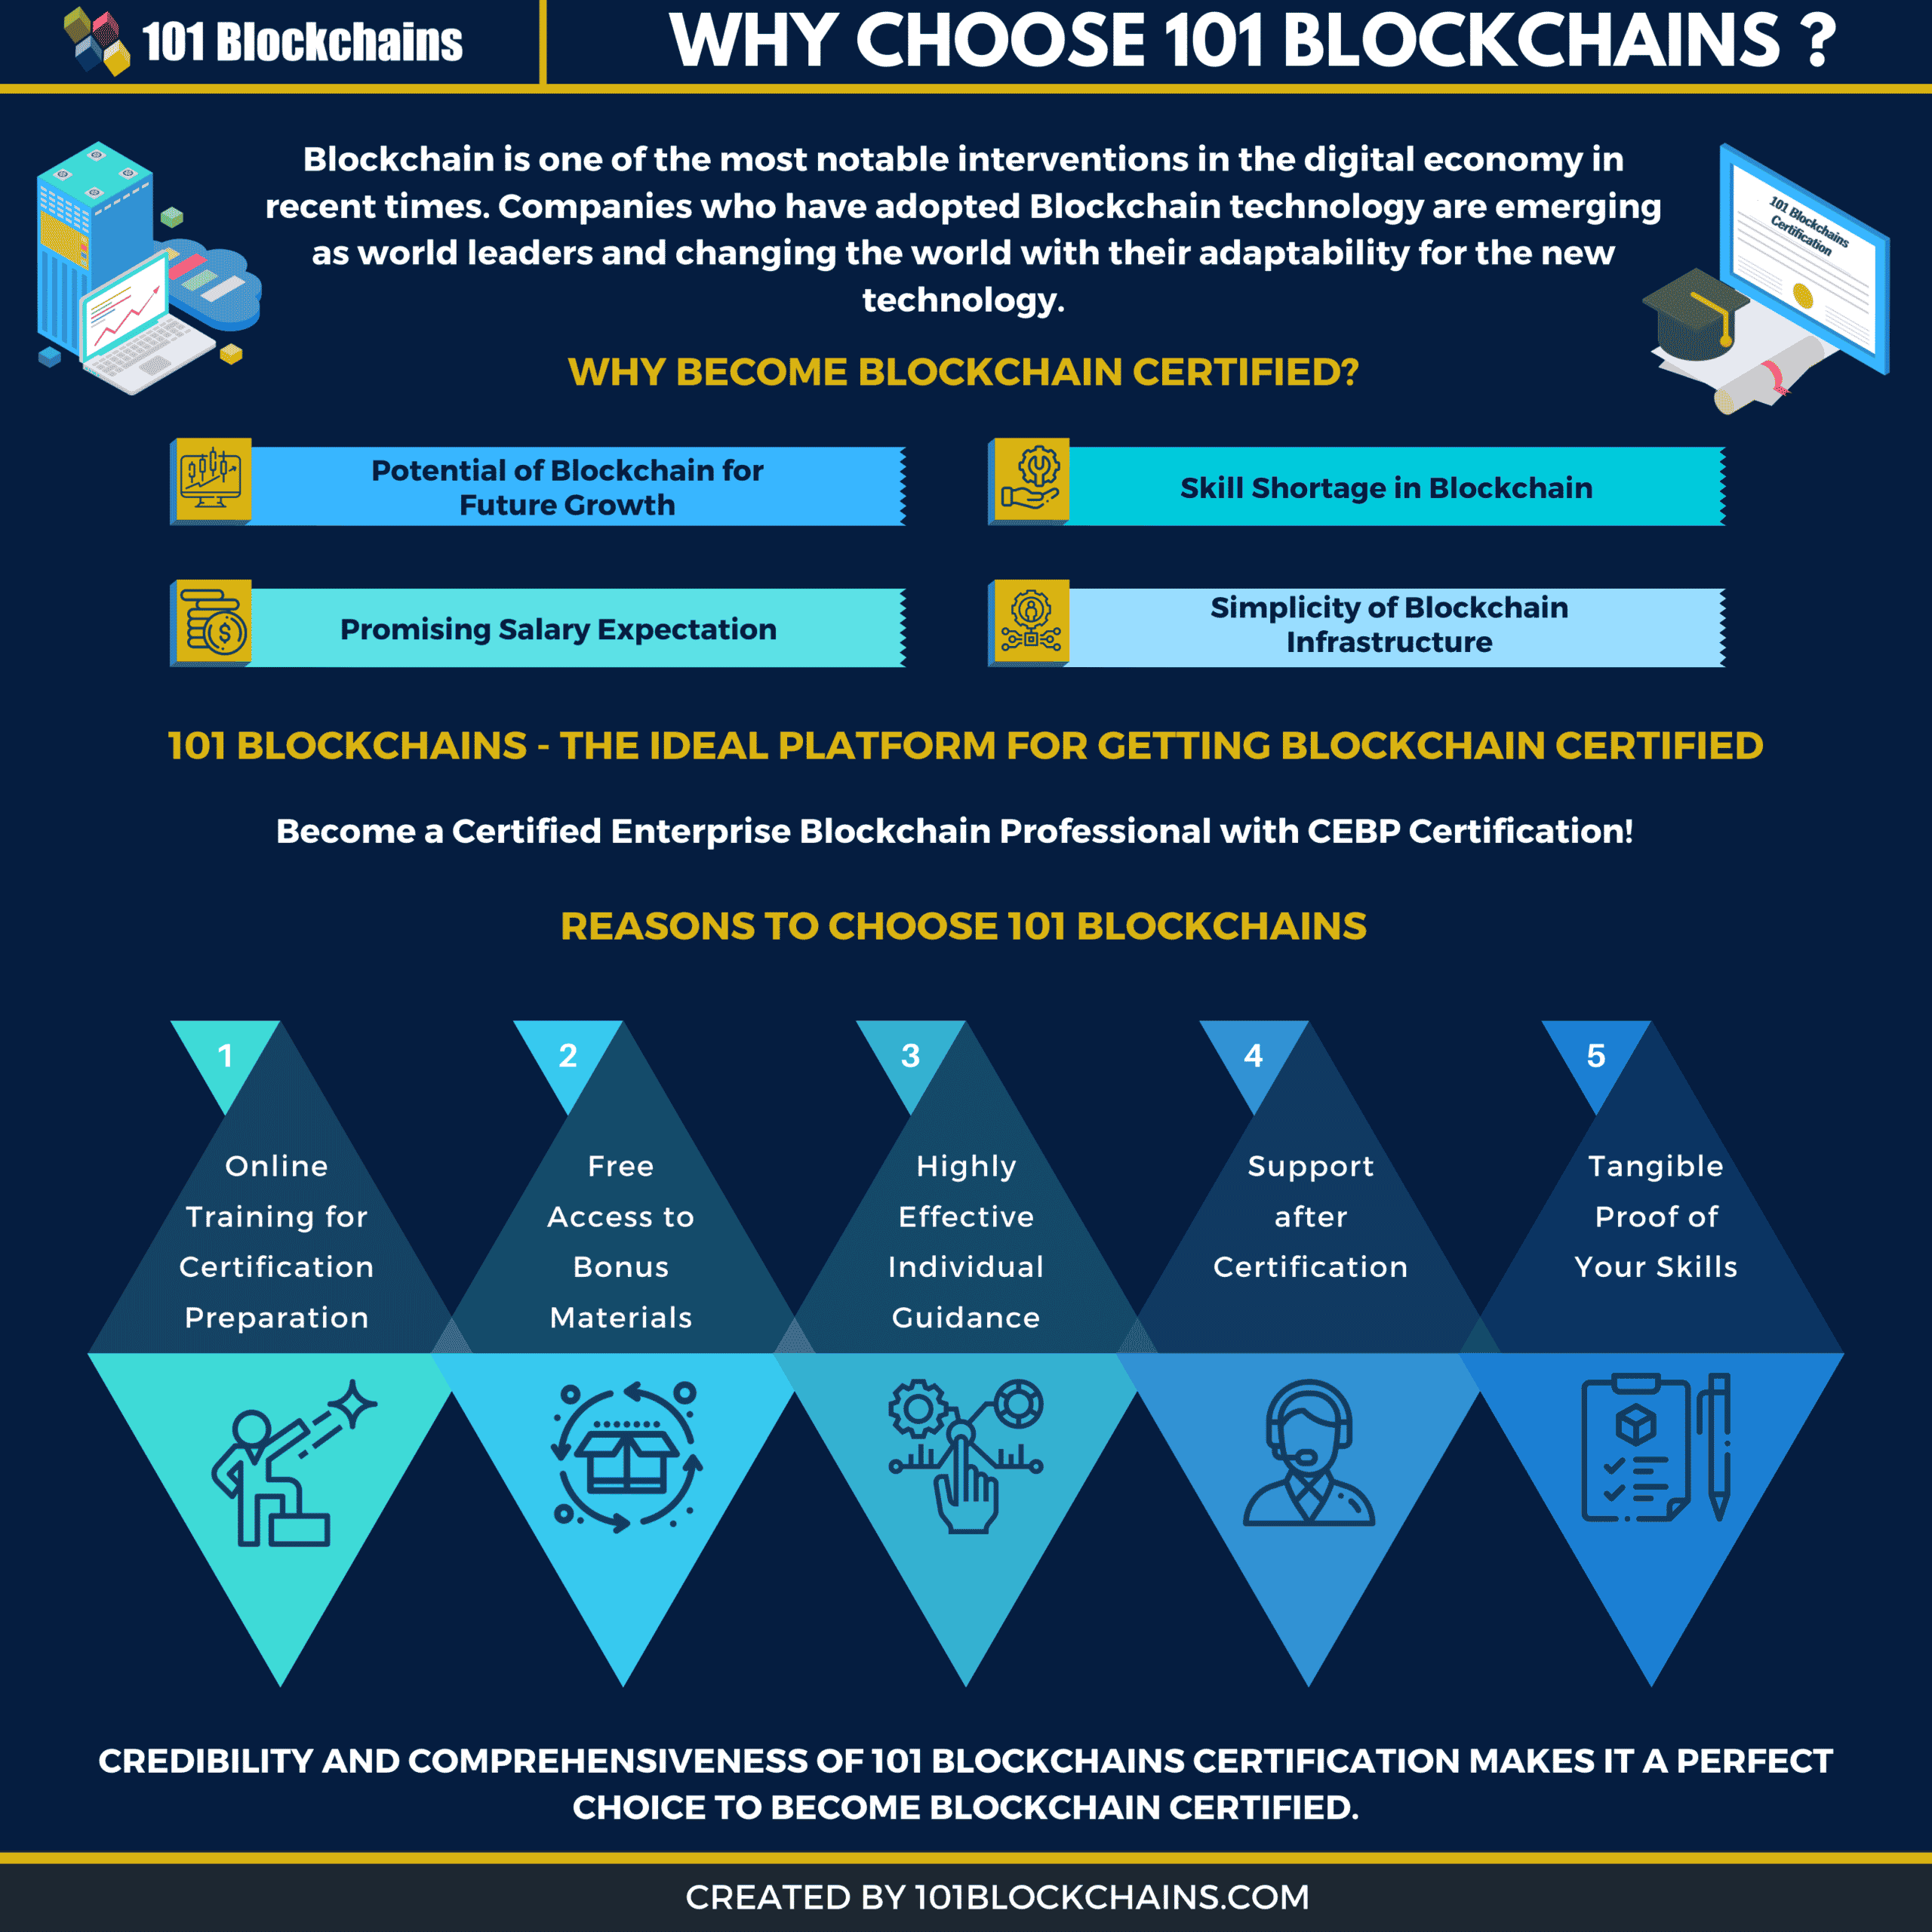 Comment créer un blockchain ?